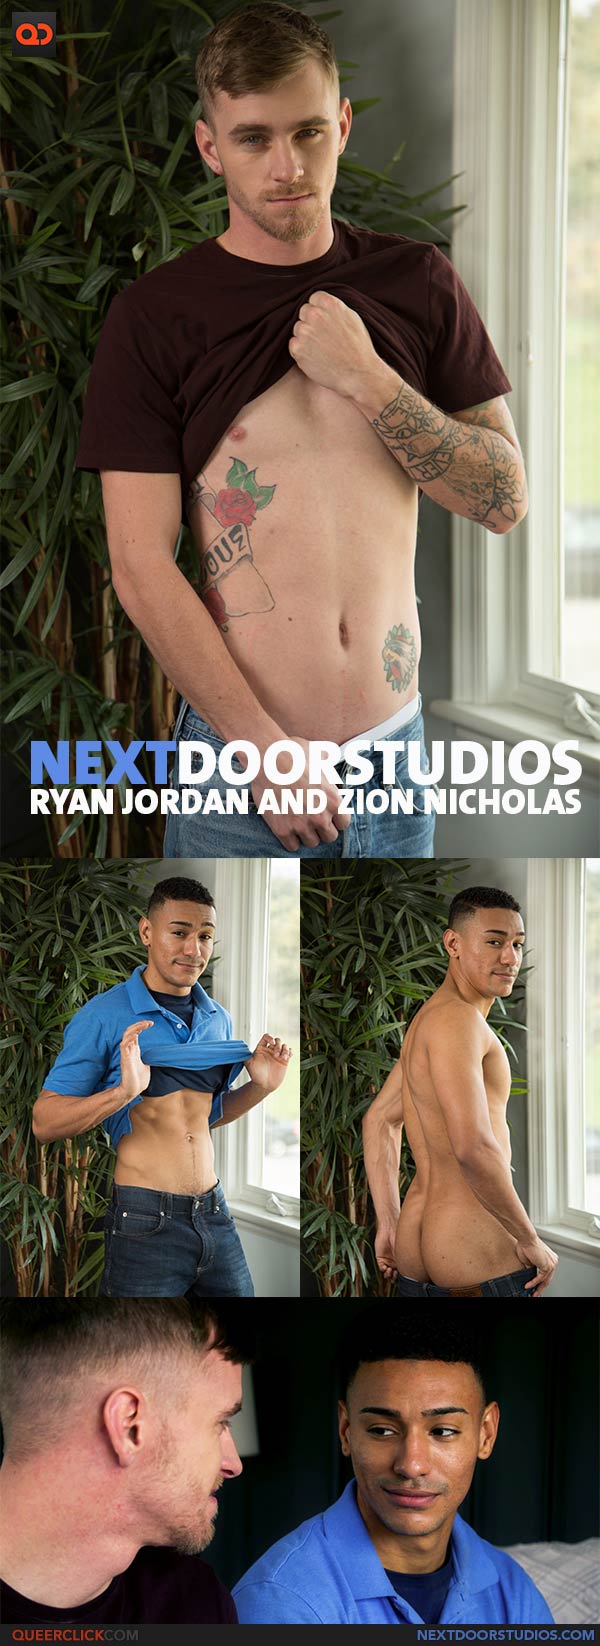 Next Door Studios:  Ryan Jordan and Zion Nicholas